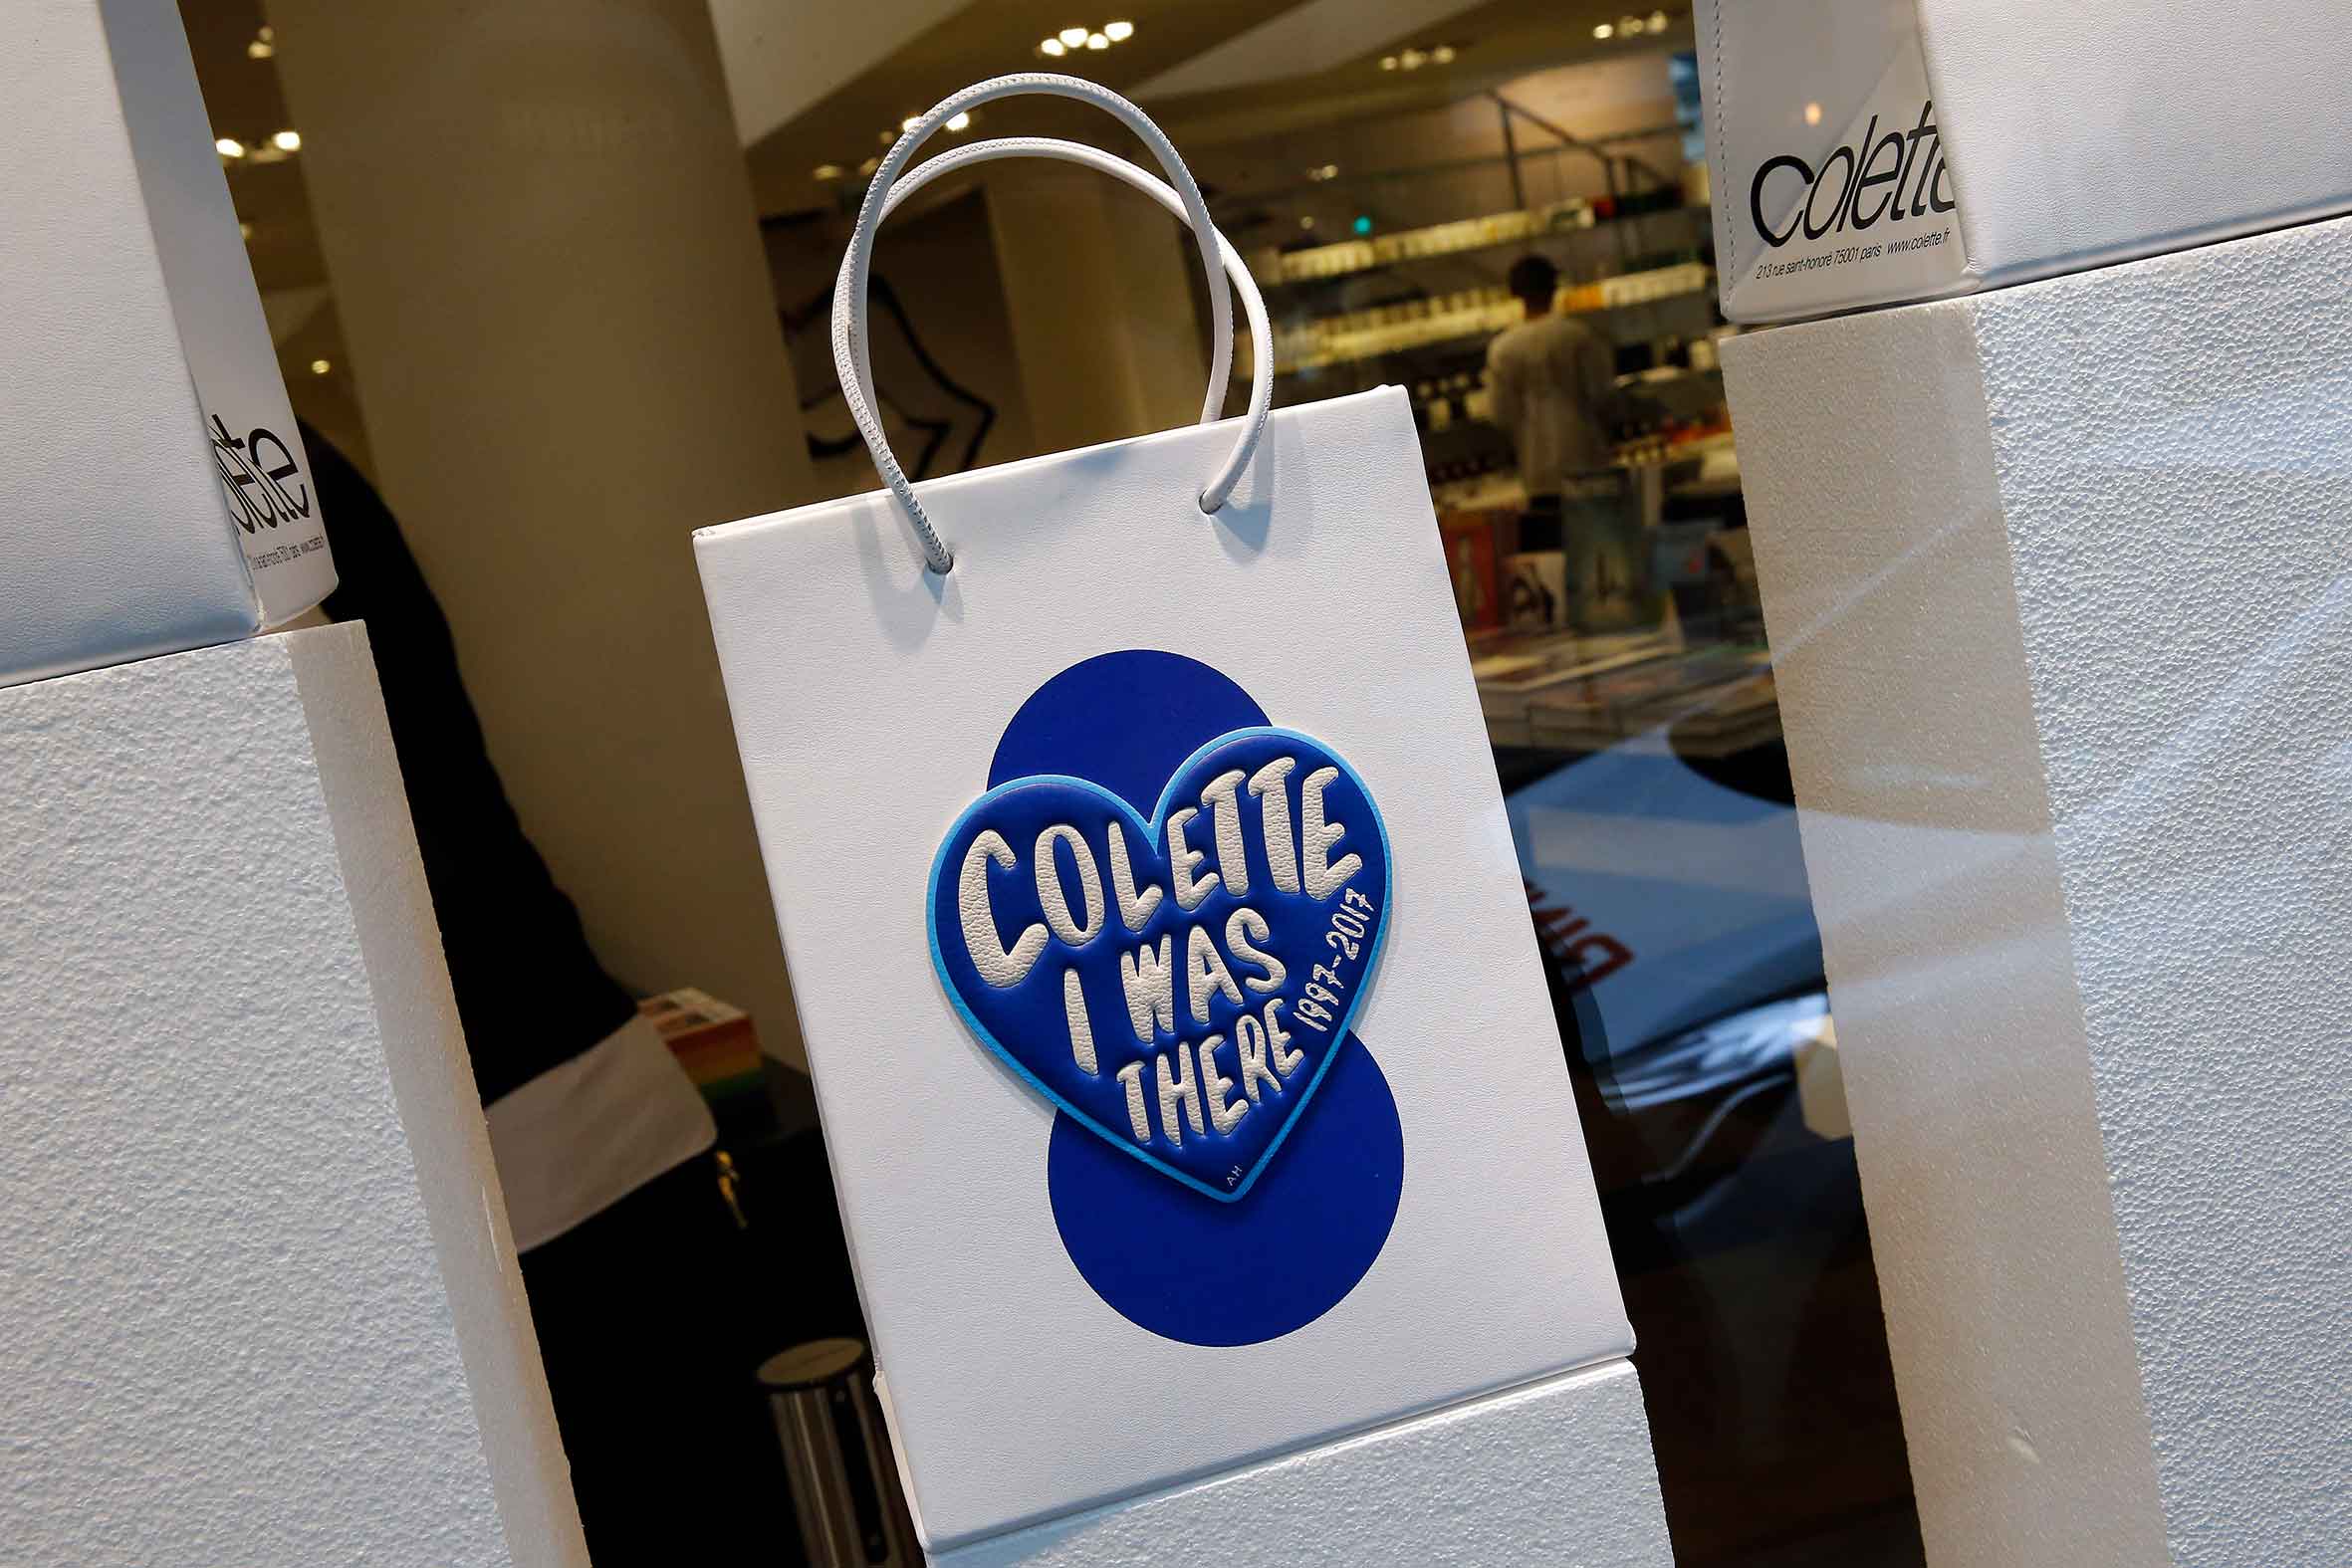 La tienda parisina Colette prepara un documental sobre su mítico cierre